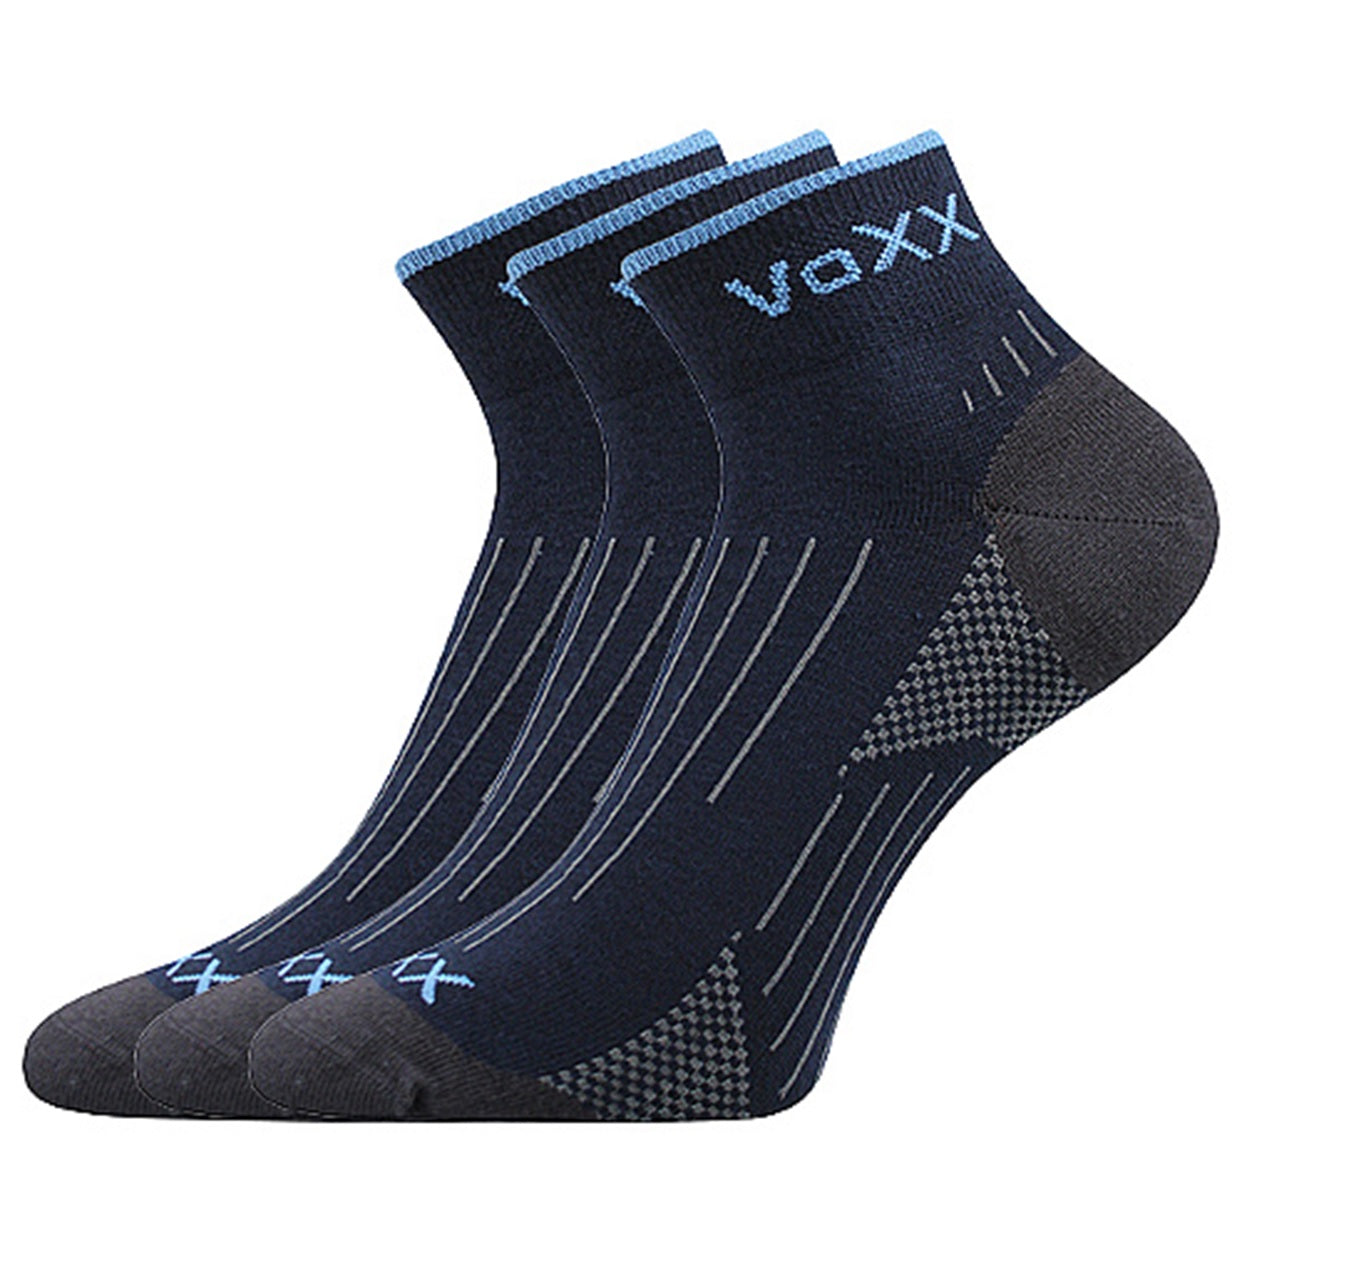 3 pairs of sport socks short navy Voxx outdoor socks